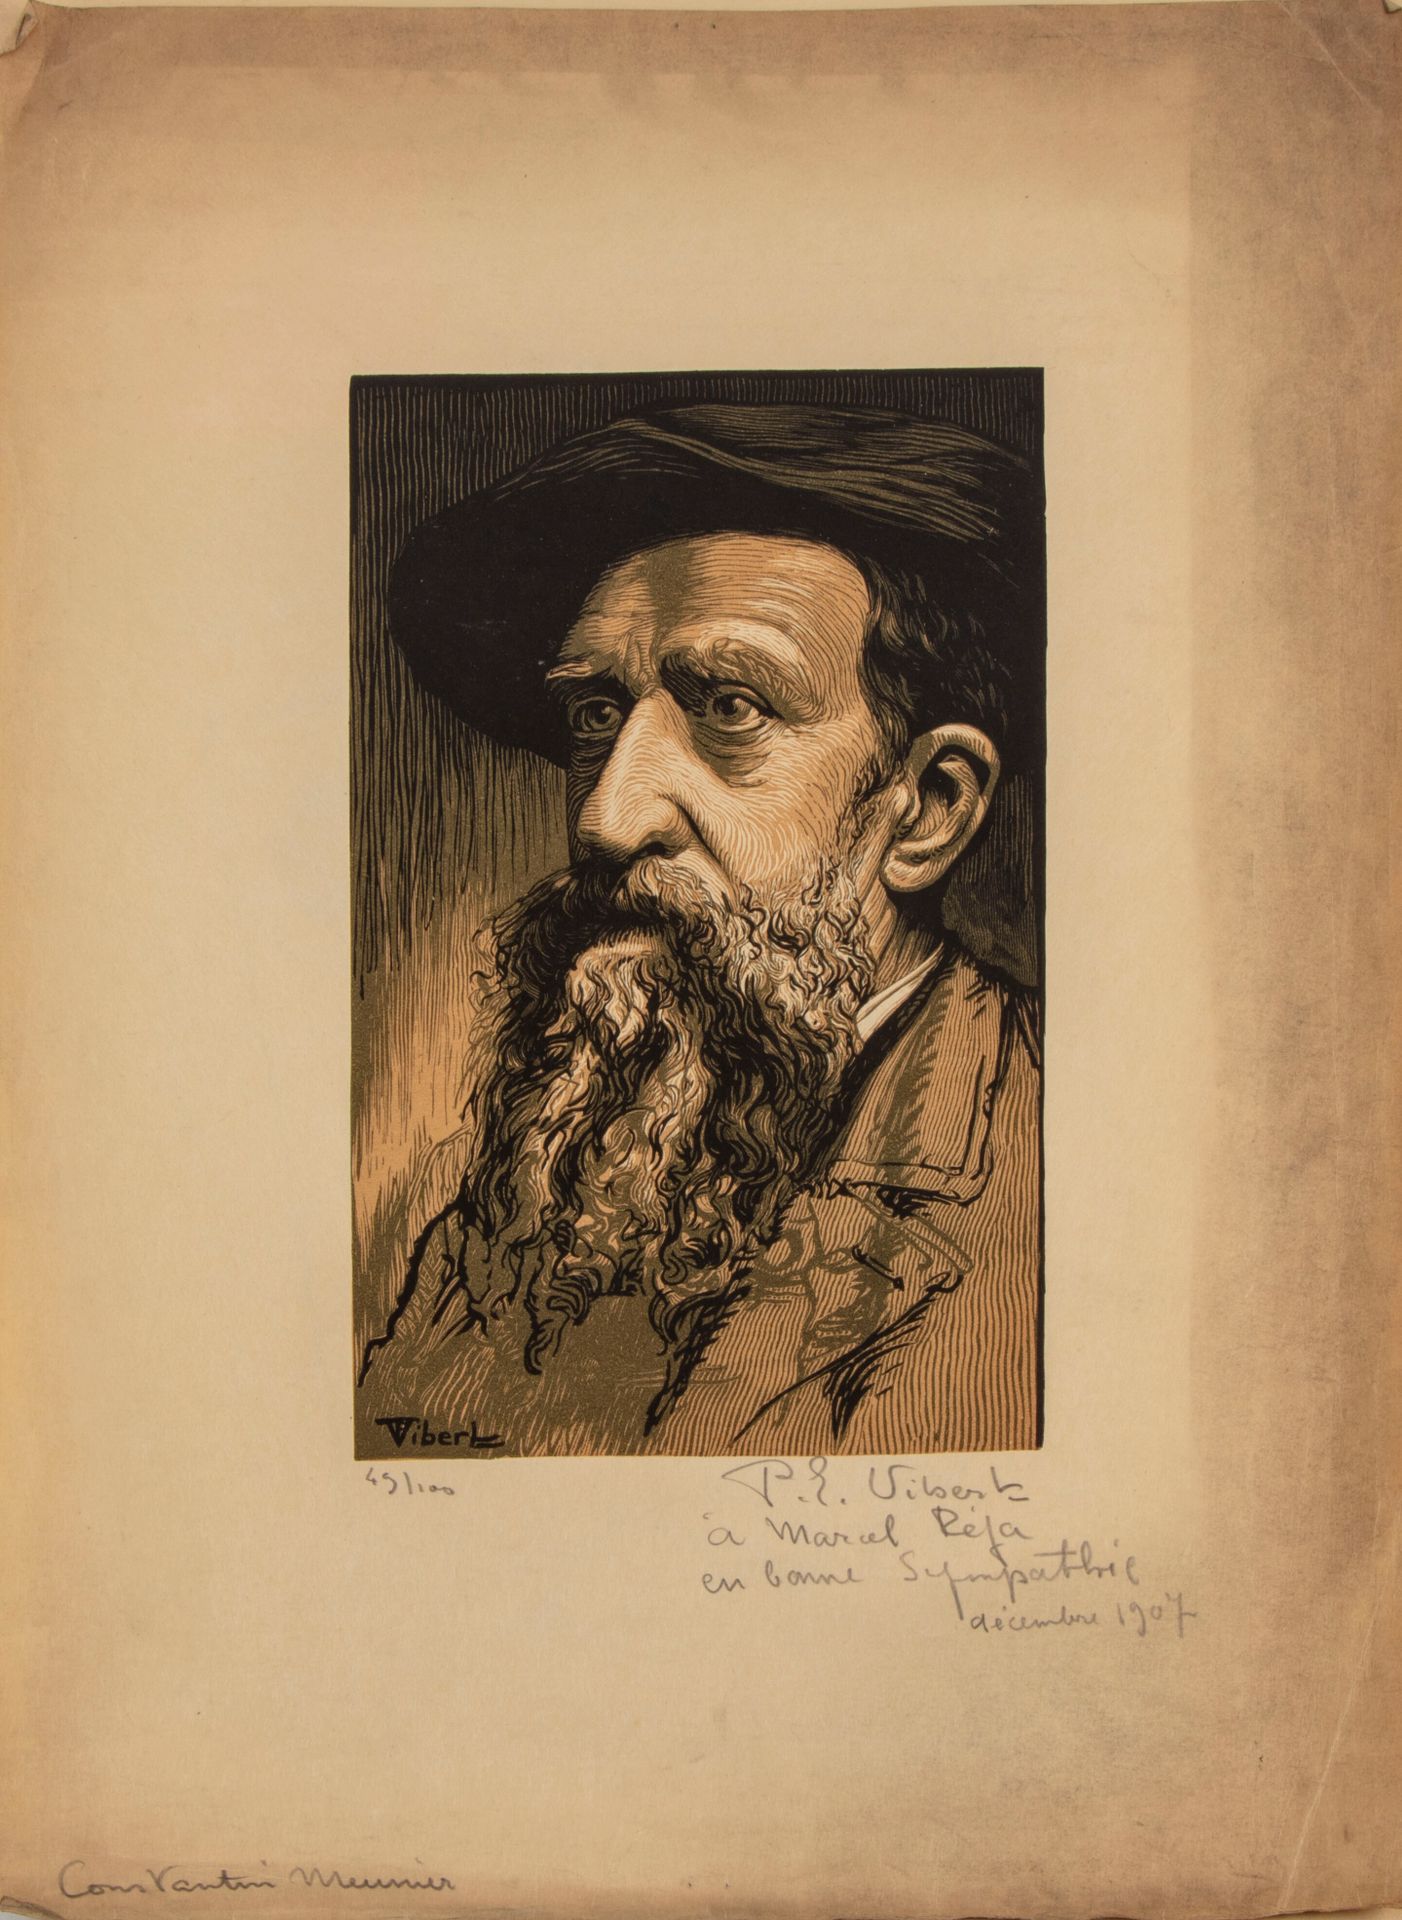 Null 皮埃尔-欧仁-维贝尔 (1875-1937)

康斯坦丁-穆尼耶的画像

雕刻，会签，编号为49/100

献给 "马塞尔-雷亚的良好同情，1907年&hellip;